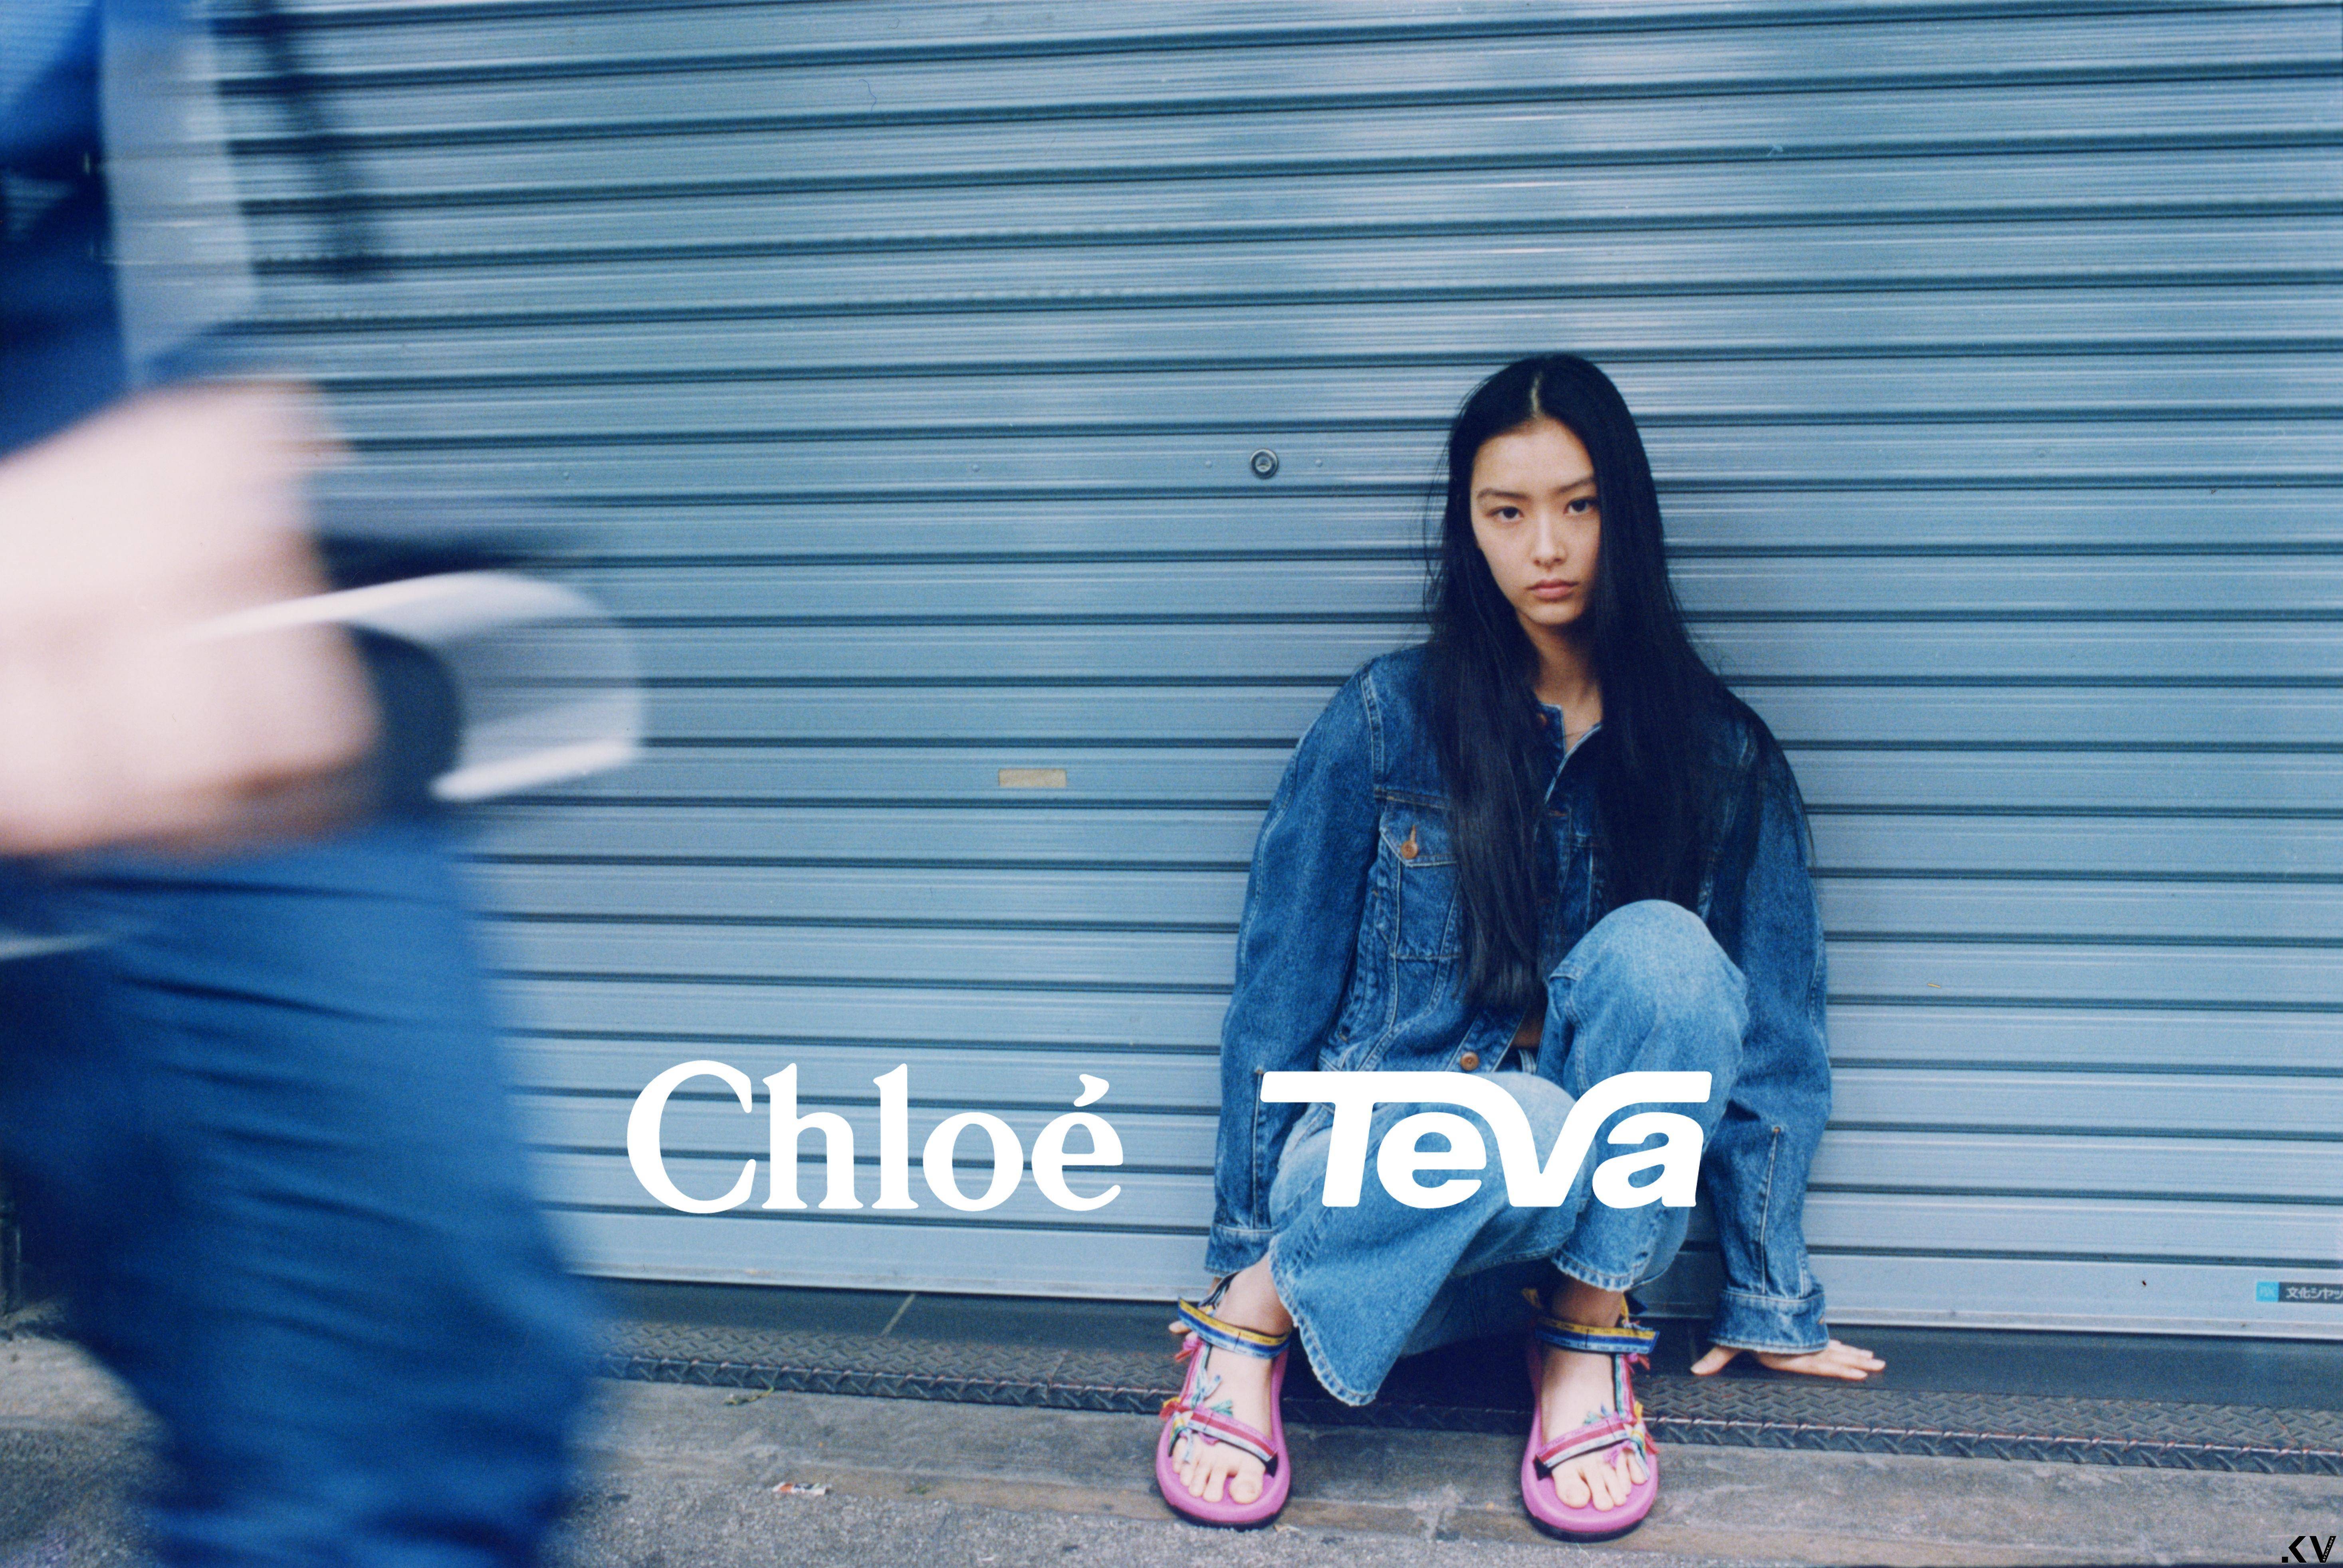 今夏最美凉鞋Chloé X Teva！　Logo彩色蝴蝶结、天然米色系梦幻上脚 时尚穿搭 图1张